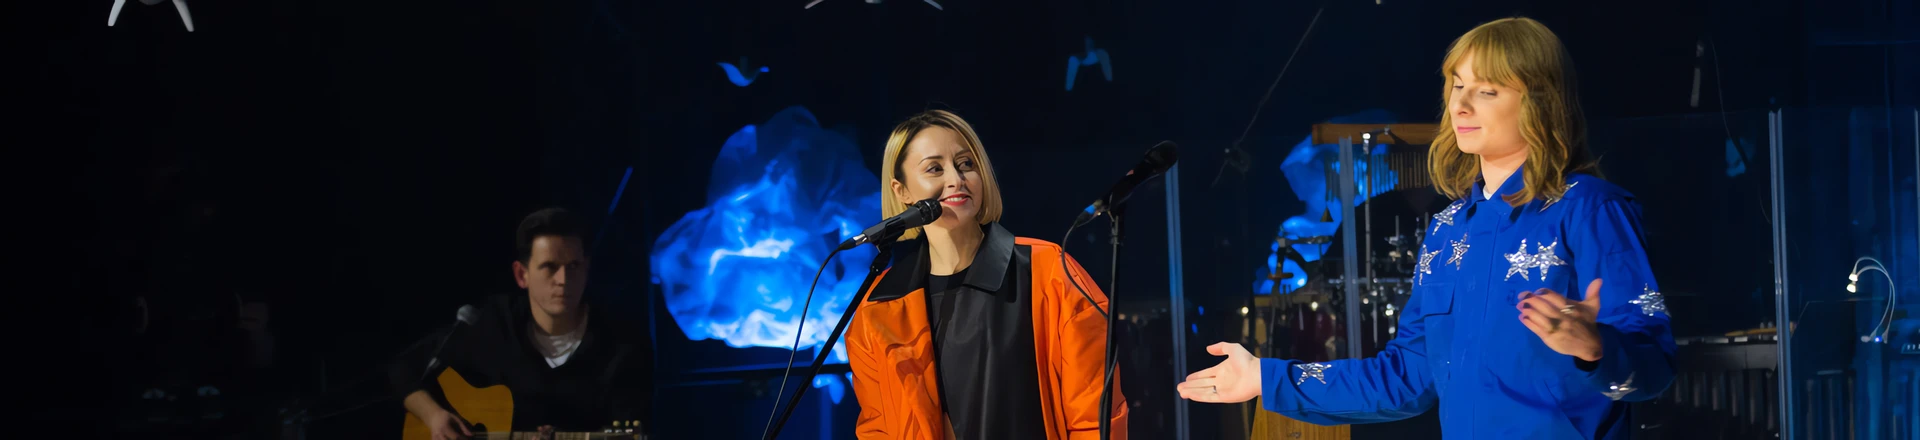 Natalia Przybysz w duecie z Ralphem Kamińskim promuje swoją trasę koncertową MTV Unplugged